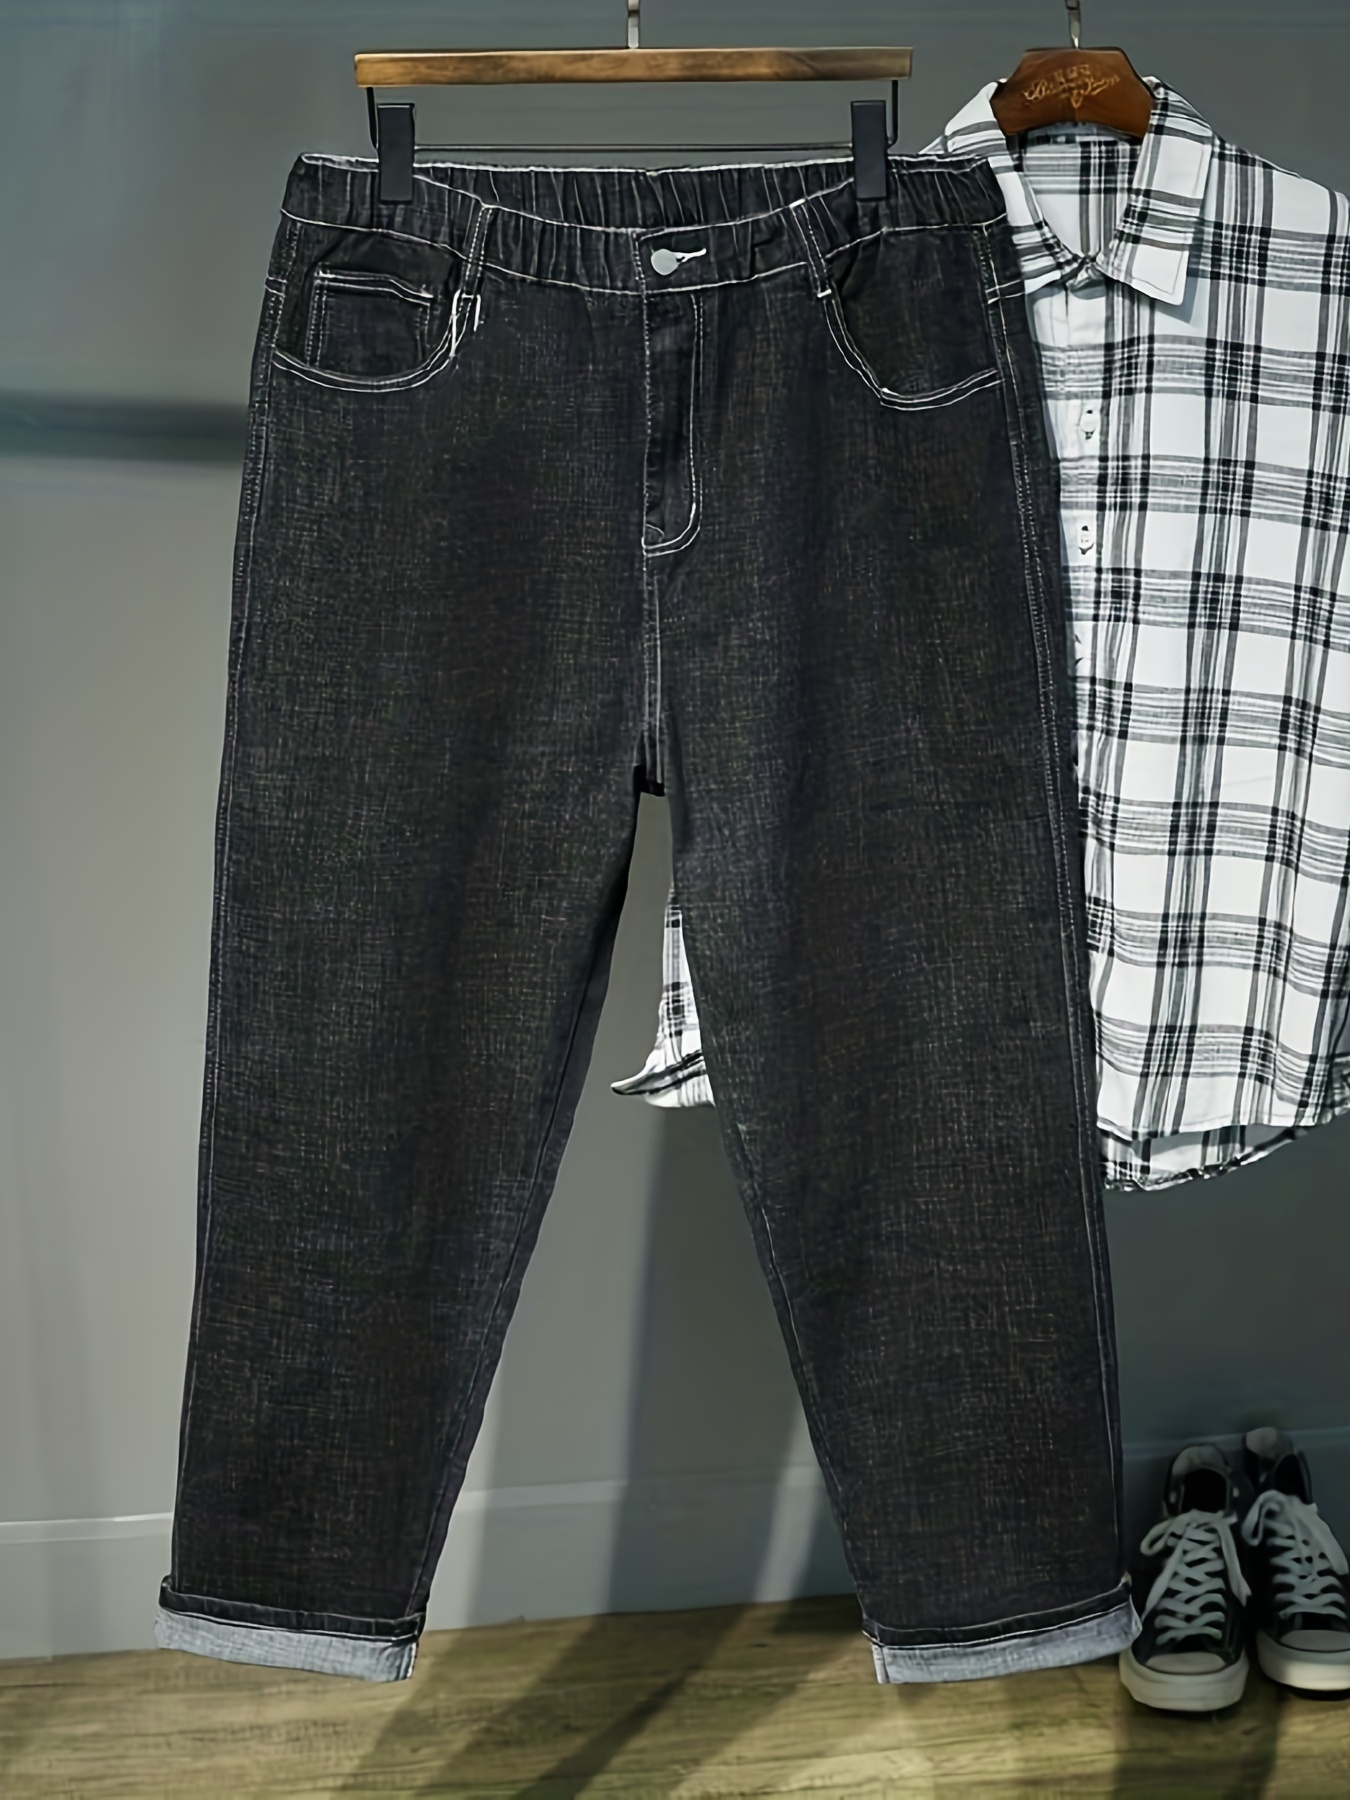 Pantalon de jogging en jean pour homme, surdimensionné, longueur cheville,  mode Hip Hop, sarouel, grande taille 42 44 46 48, collection été automne  2020